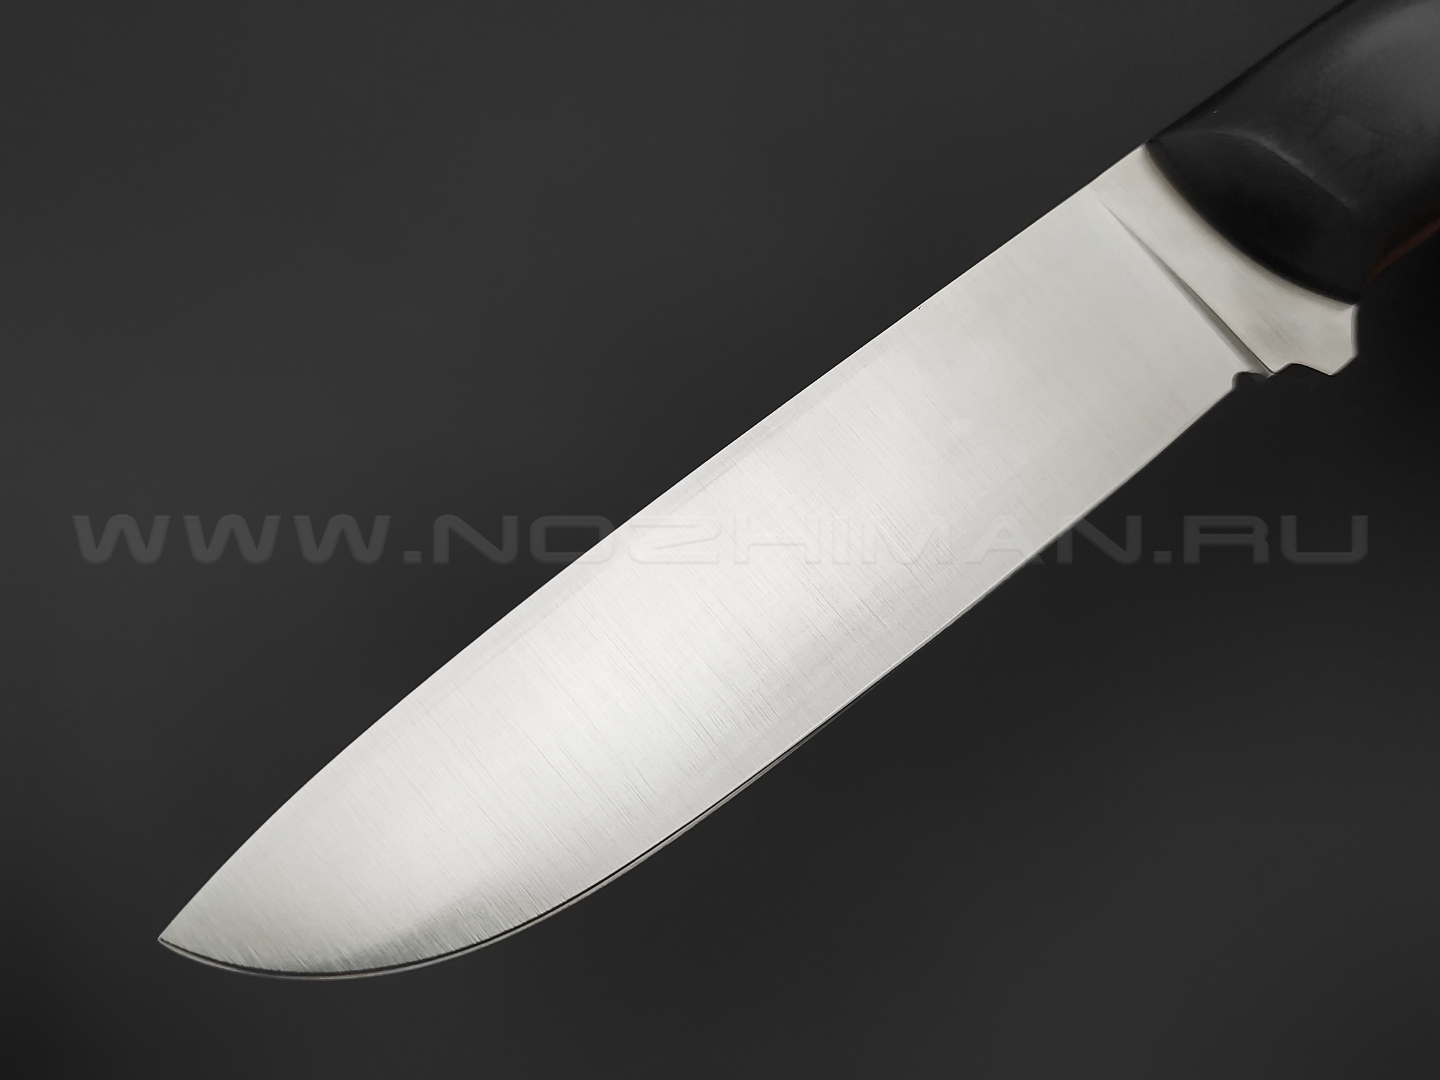 Волчий Век нож Wolfkniven сталь N690 WA сатин, рукоять G10 black